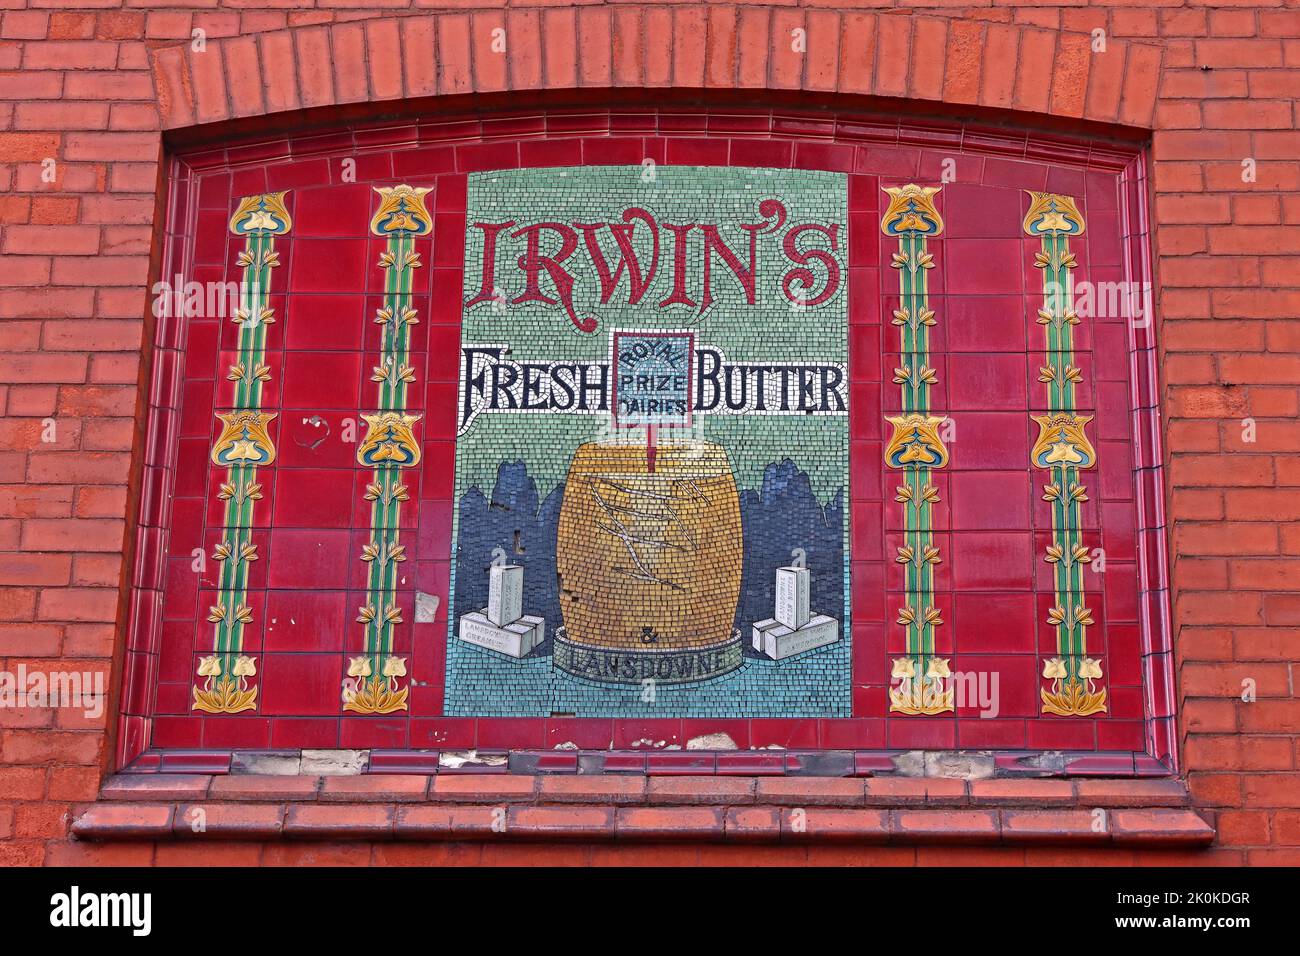 Historische Schilder, Irwins, Fresh Butter, Lansdowne, Allerton Road, Liverpool, Merseyside, England, Großbritannien, L18 1LN Stockfoto